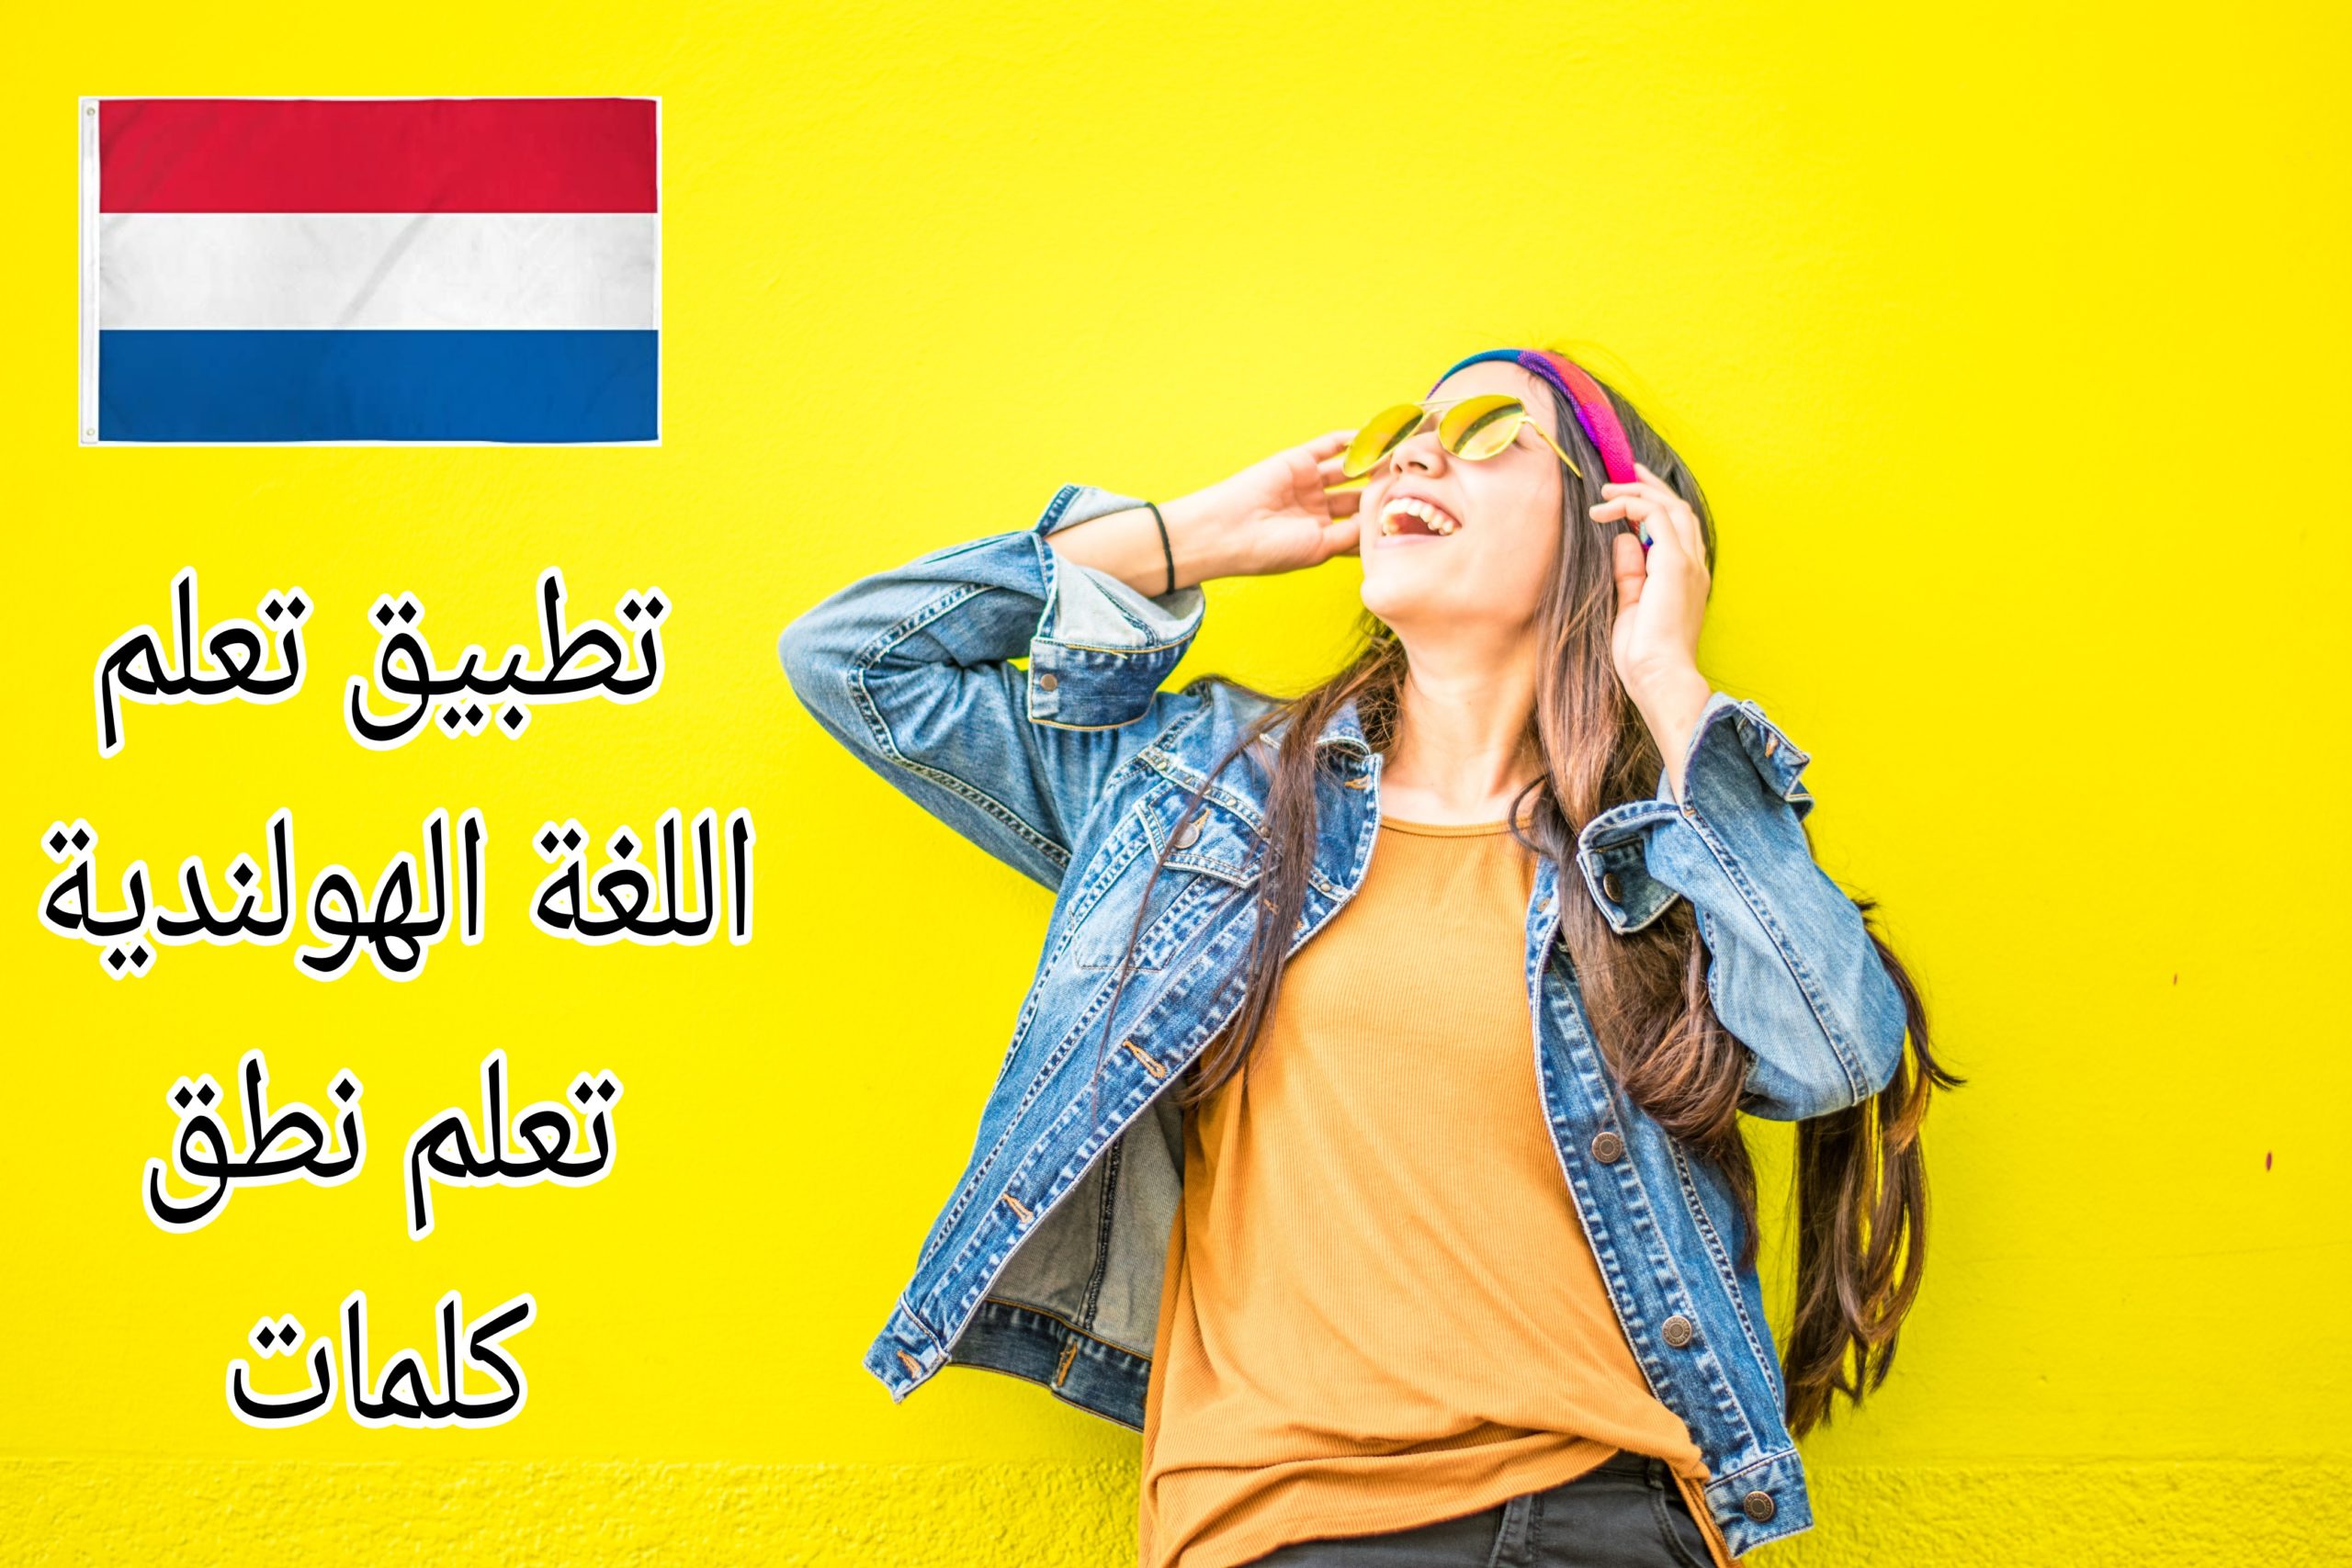 تحميل تطبيق لتعلم الهولندية تعليم نطق وسماع قواعد اللغة الهولندية